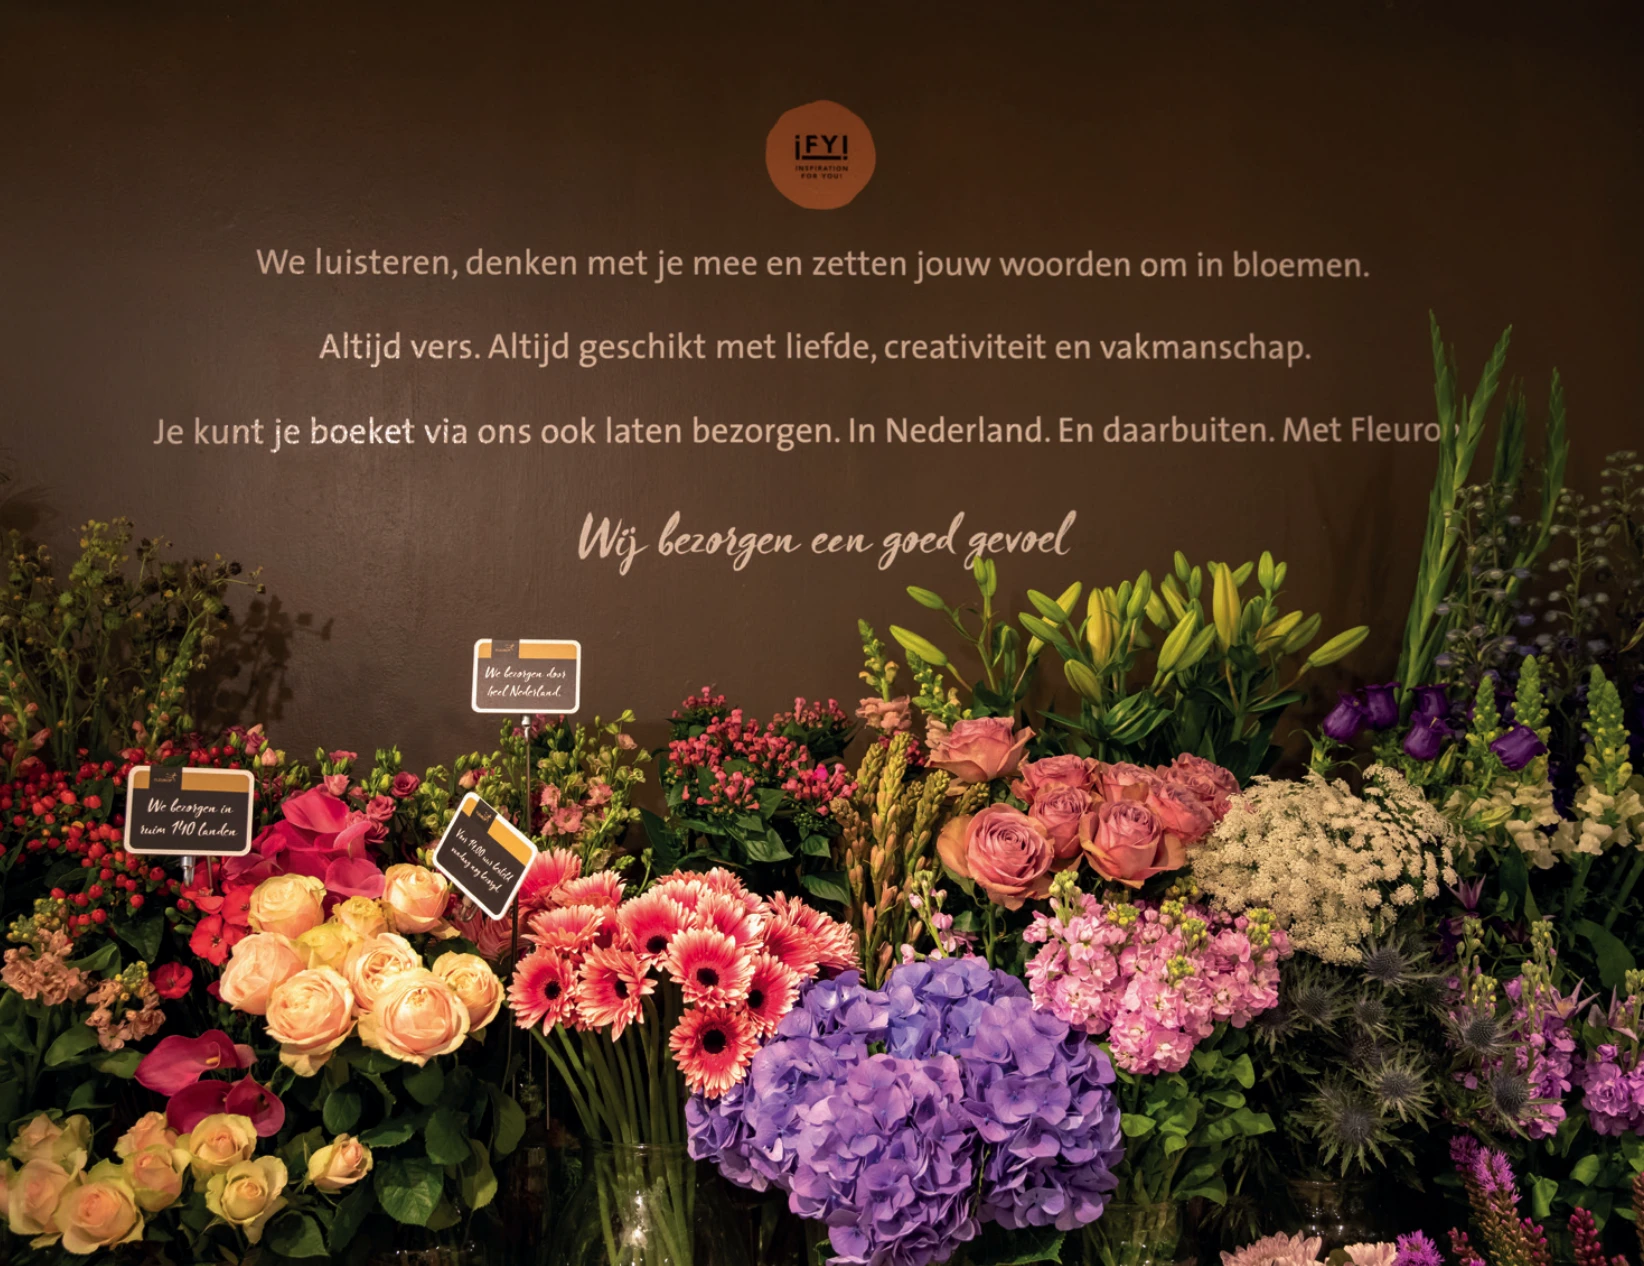 Flowershop Bilthoven Bloemen bestellen.